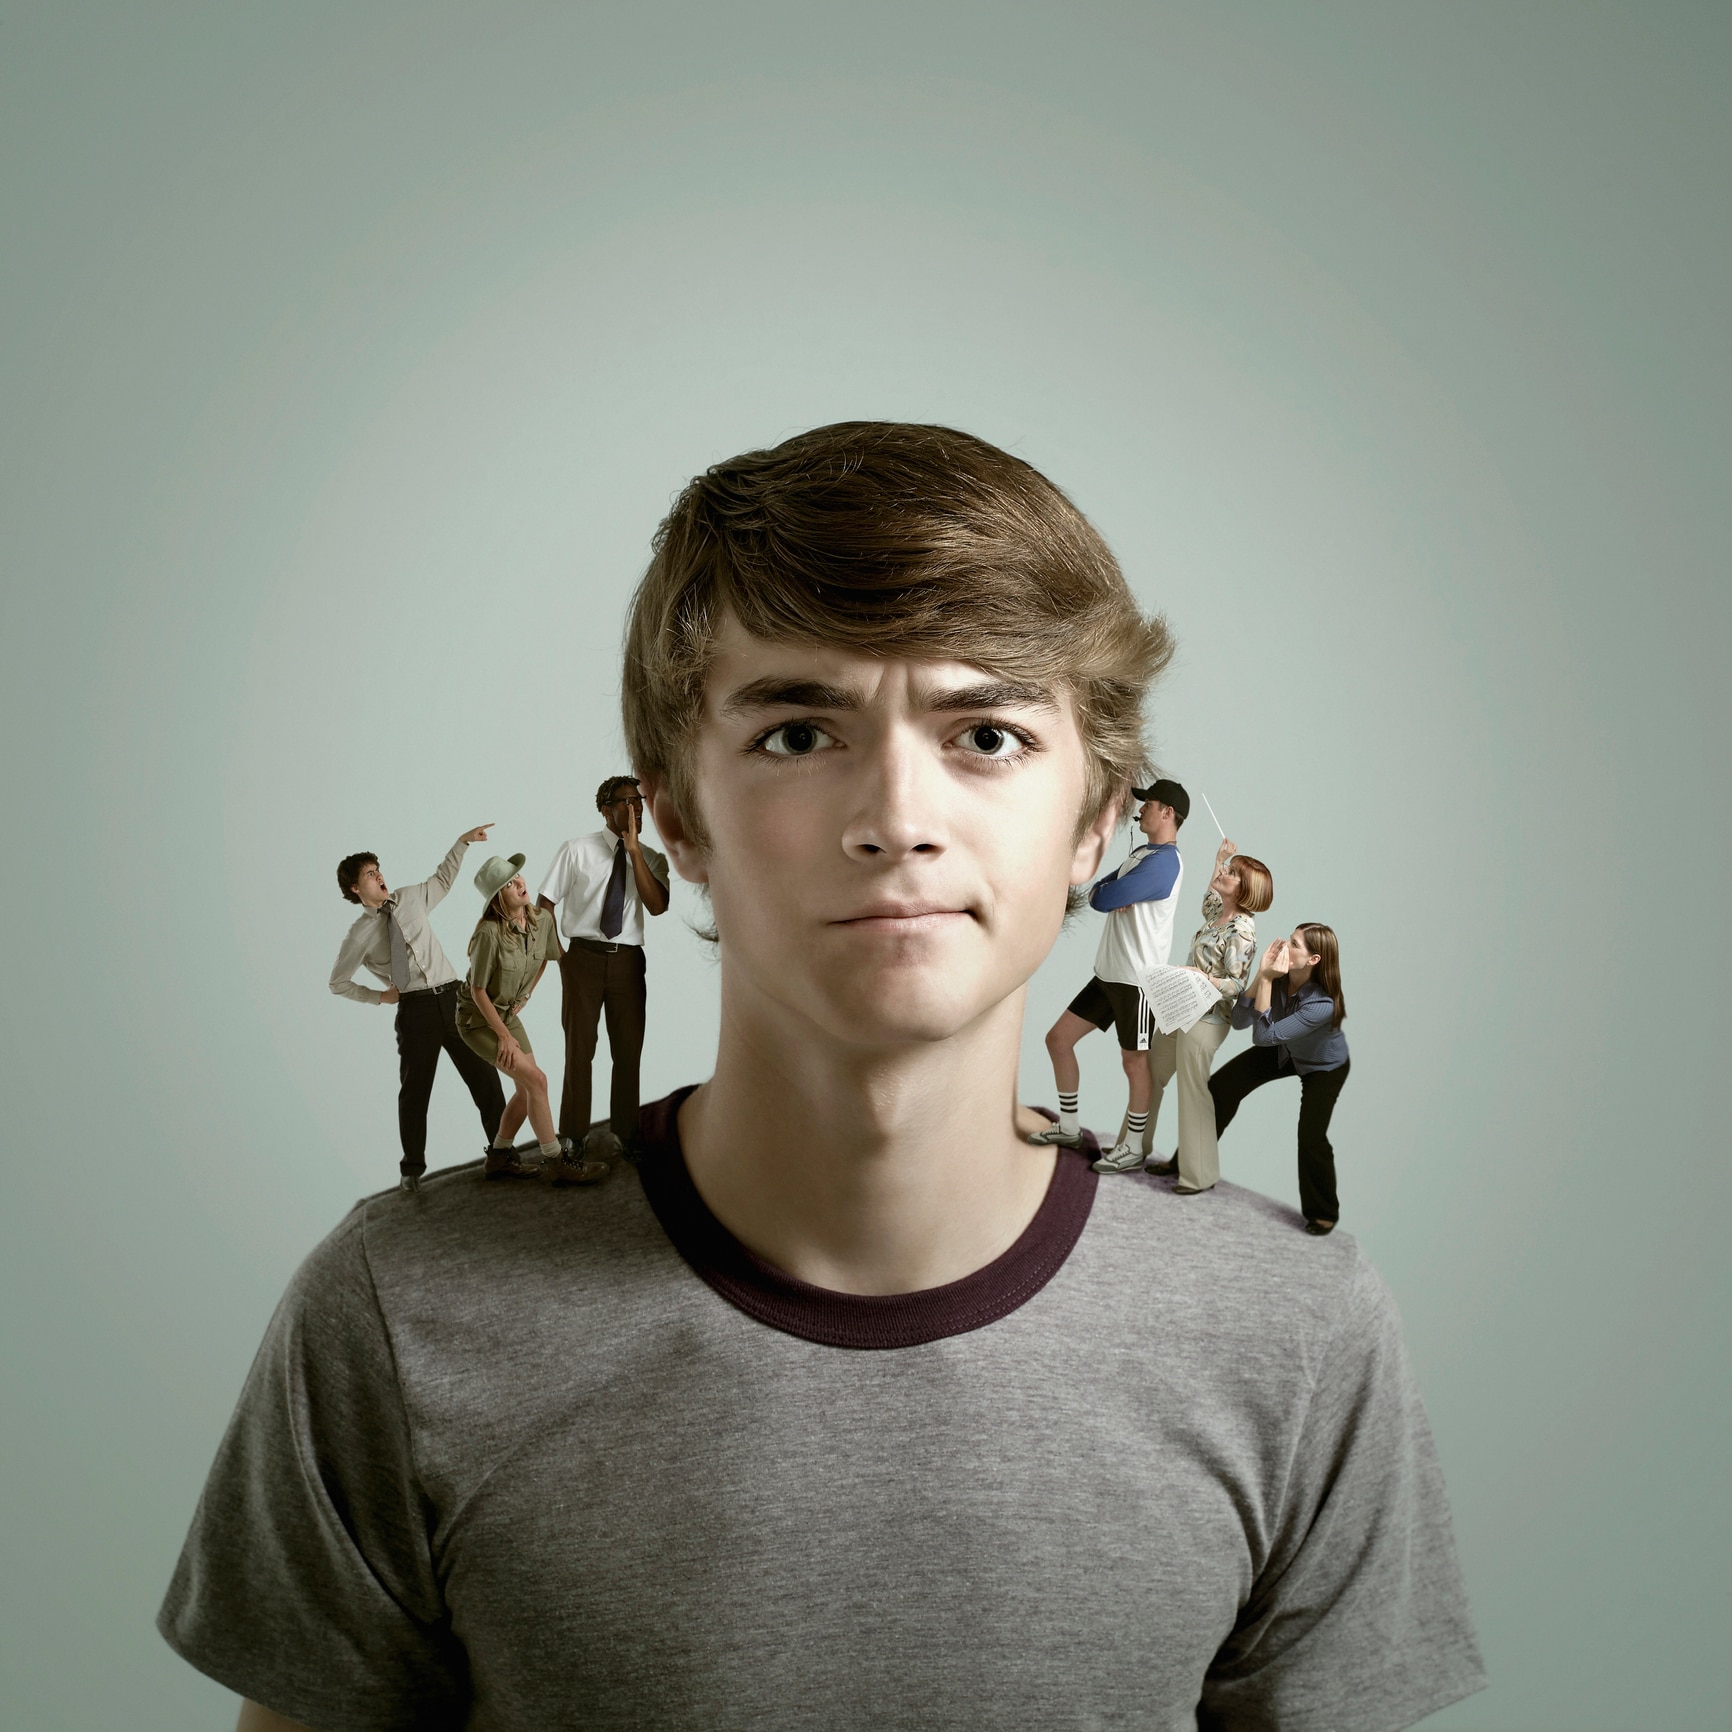 Le scelte negli adolescenti: cosa fare nel caso di confusione mentale